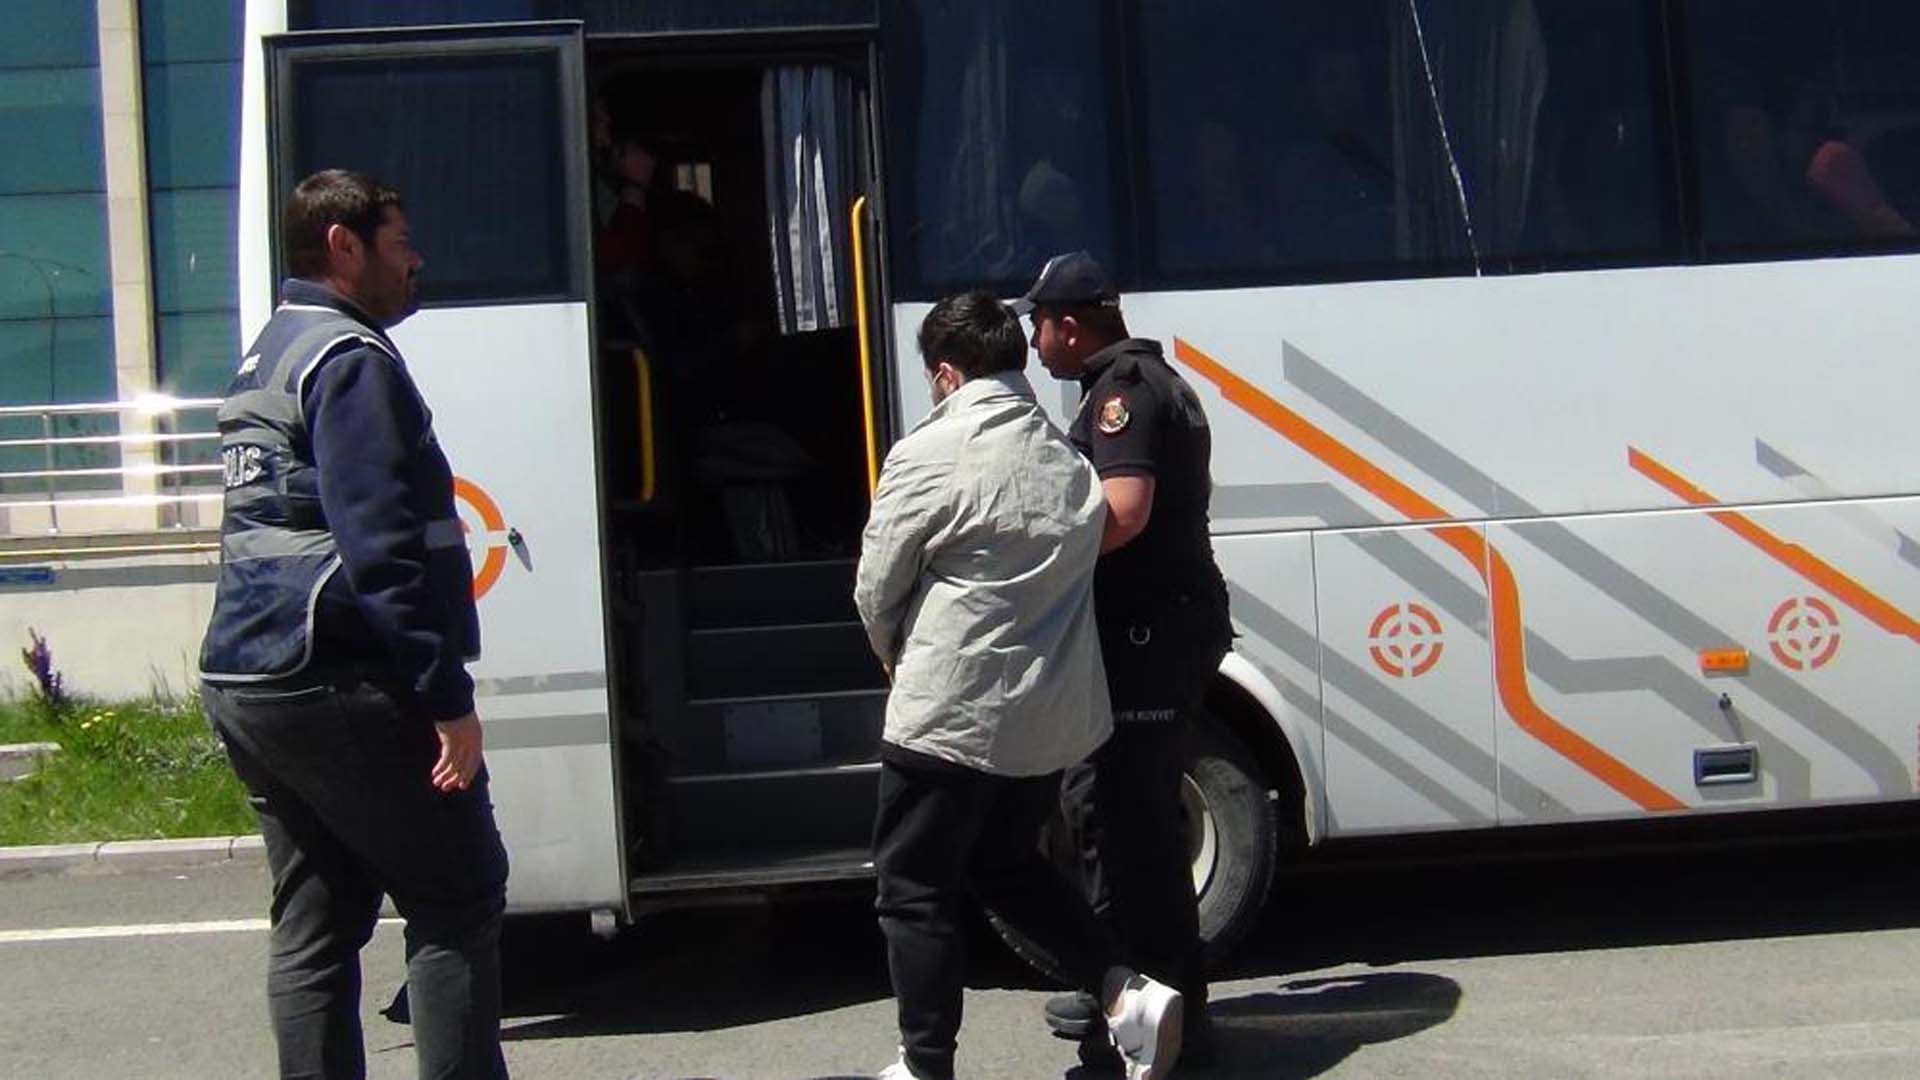 Kars'ta kargo çetesine operasyon: 9 kişi tutuklandı